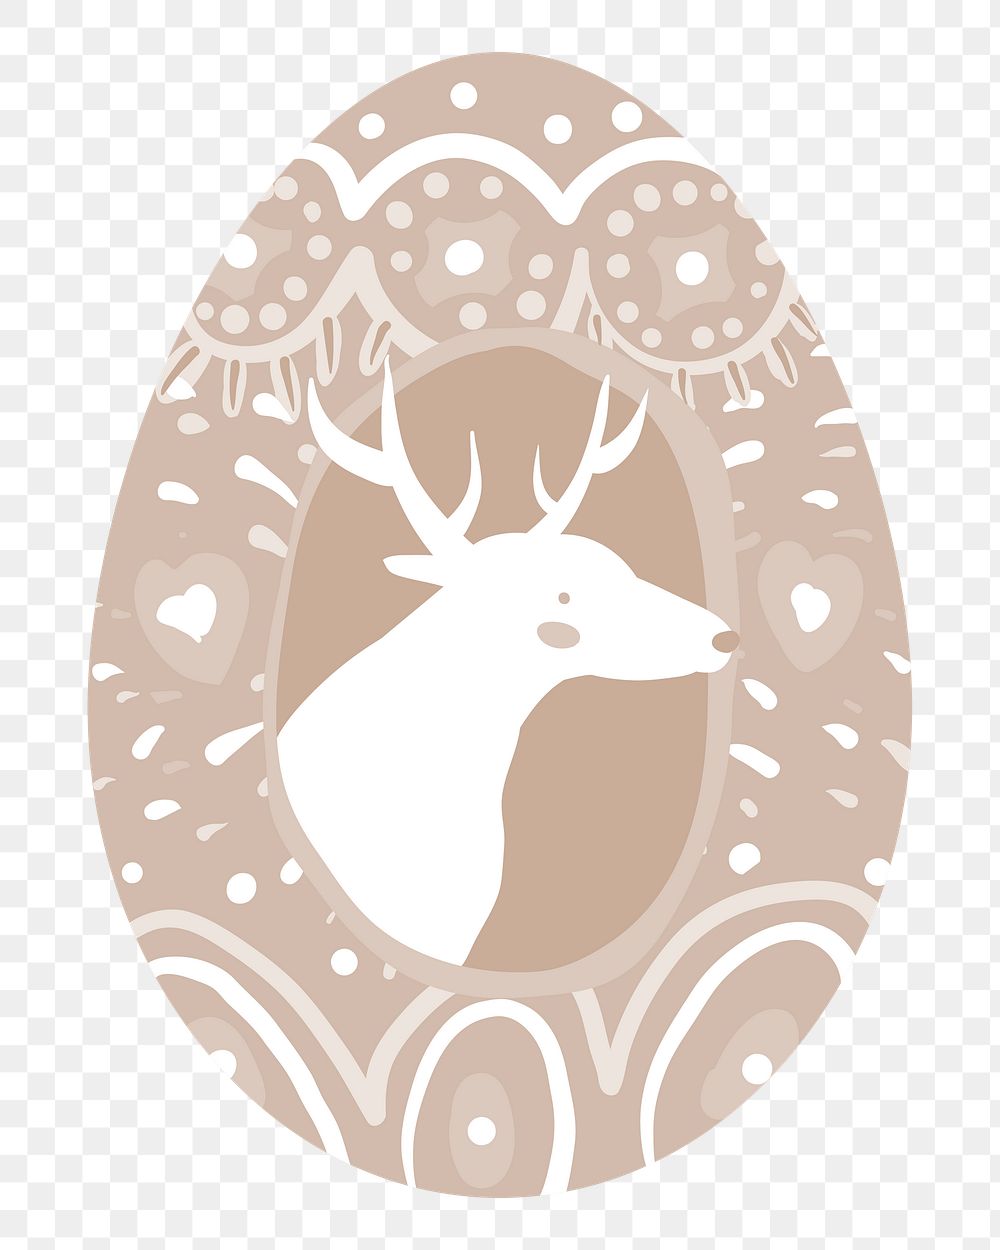 Png brown deer easter egg illustration, transparent background